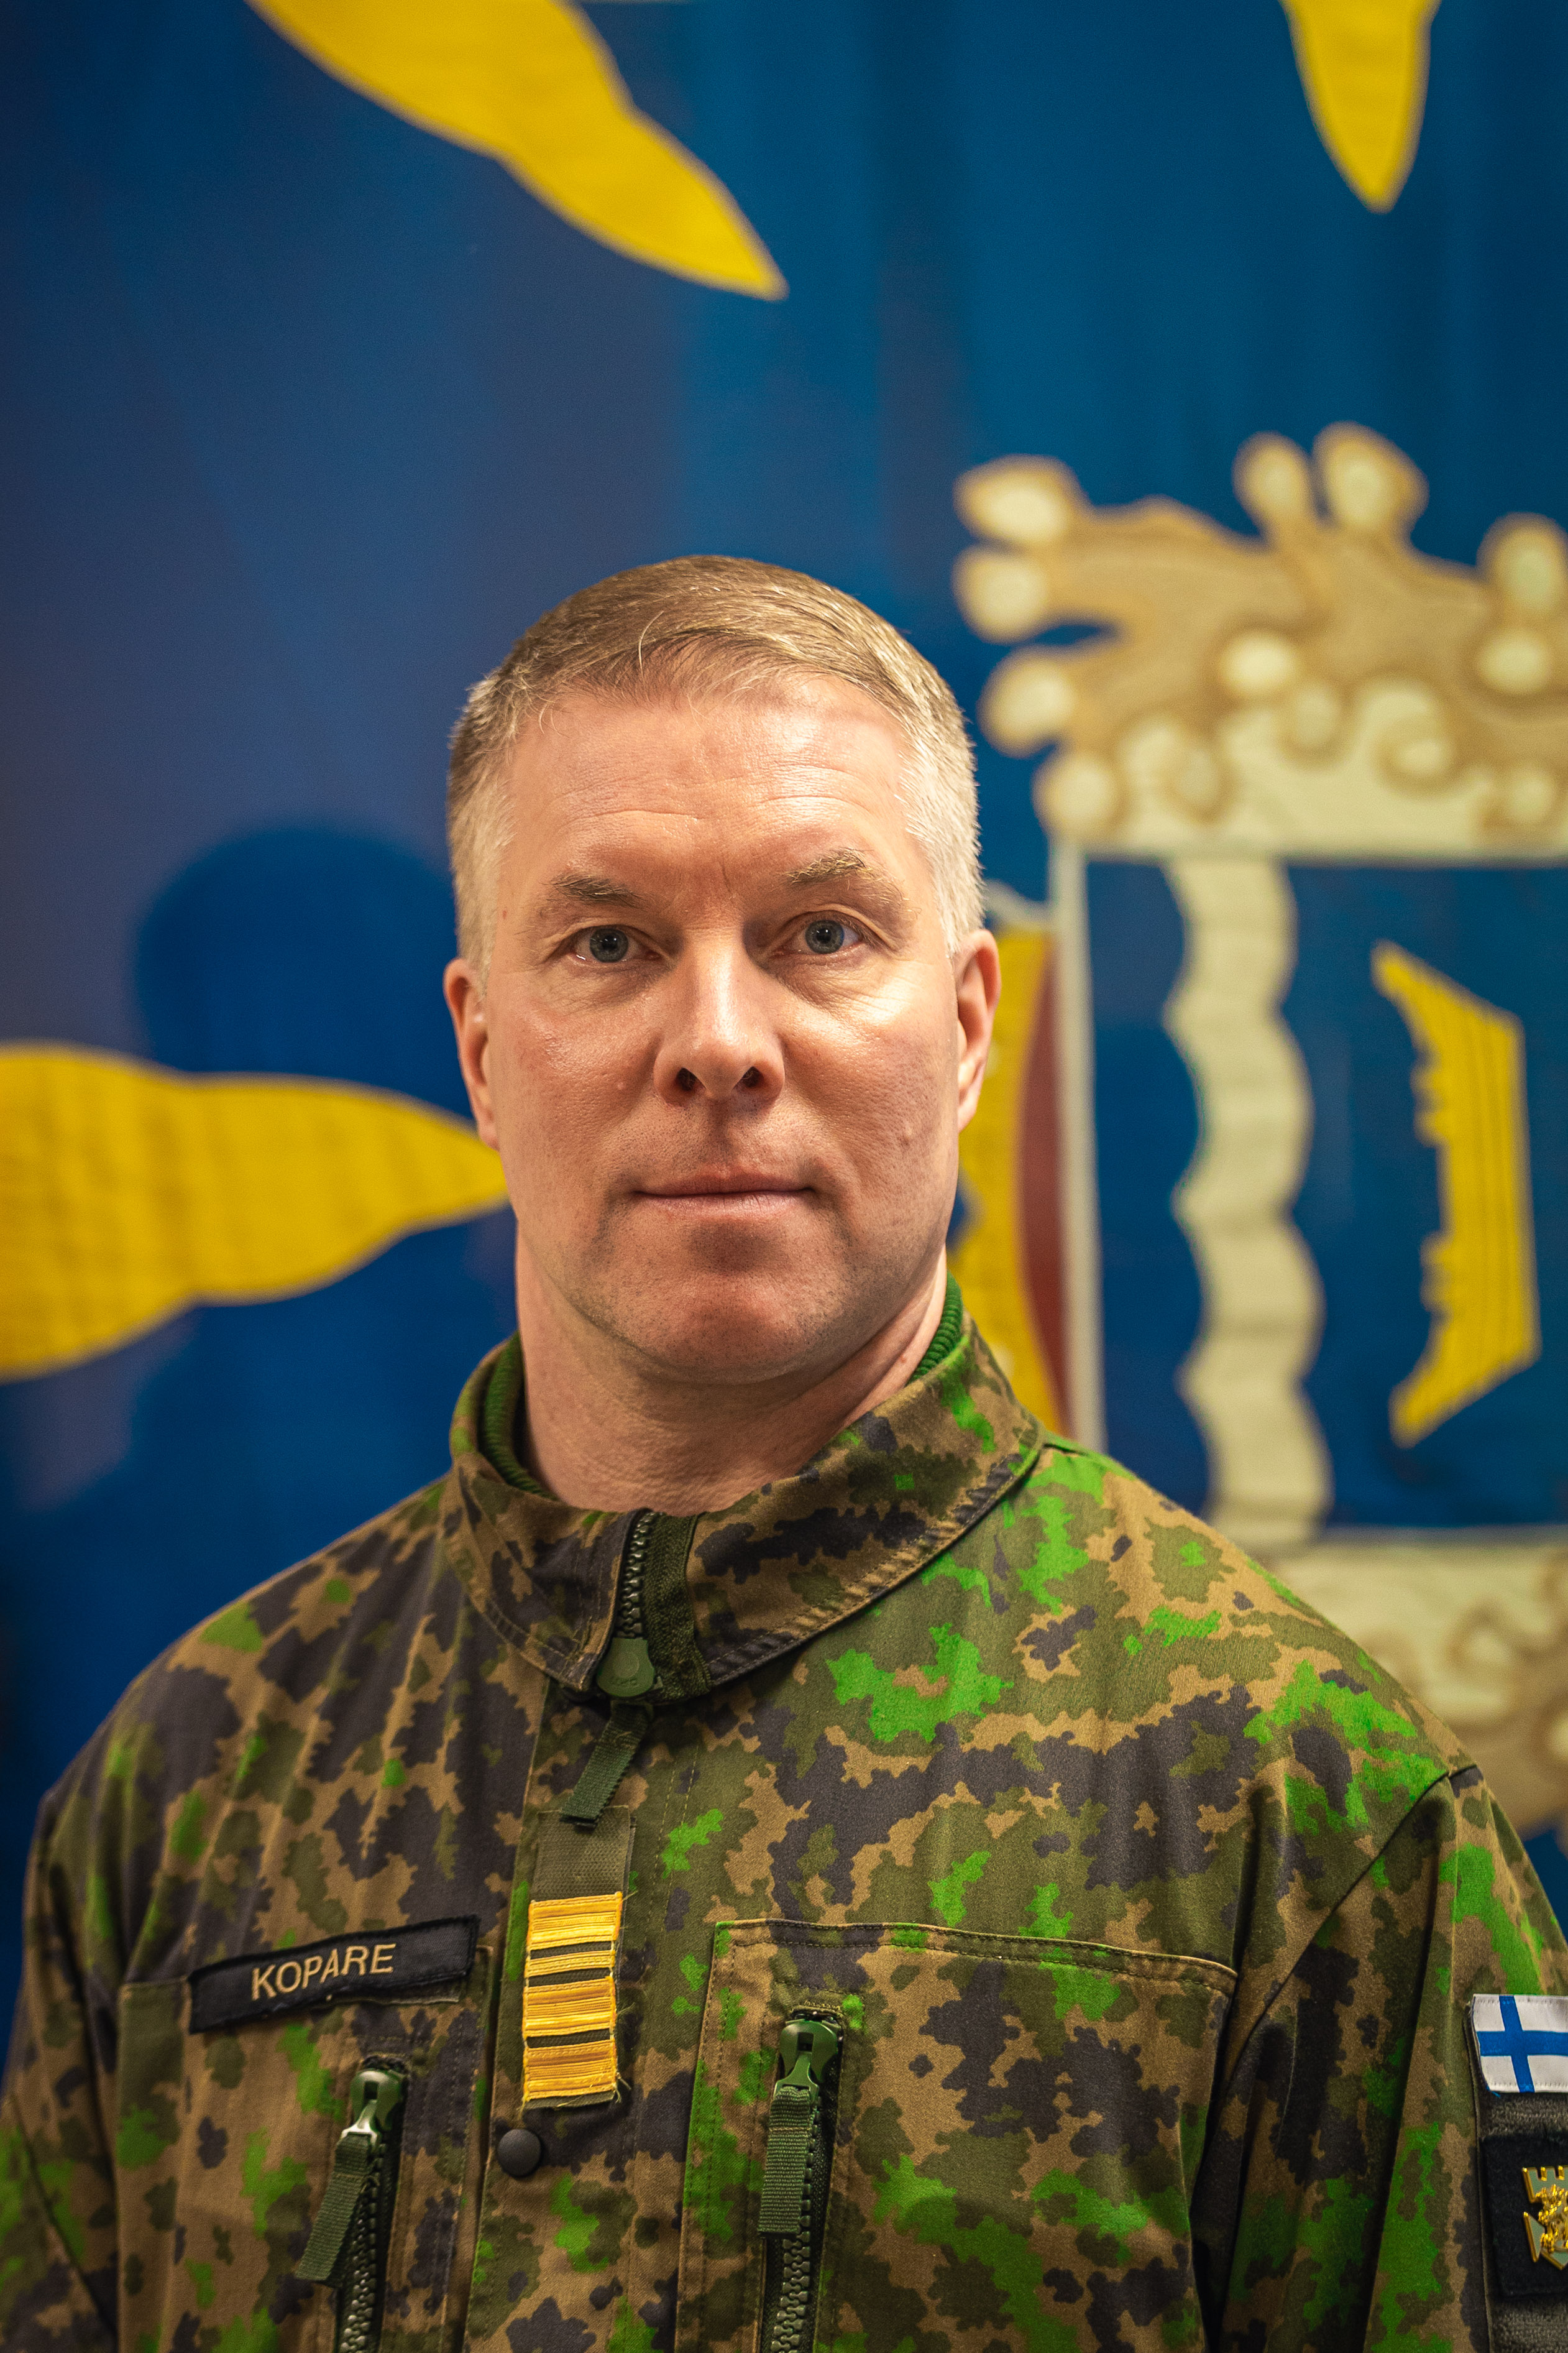 Komentaja Jyri Kopare, Uudenmaan prikaatin komentaja 1.3.2023 alkaen.